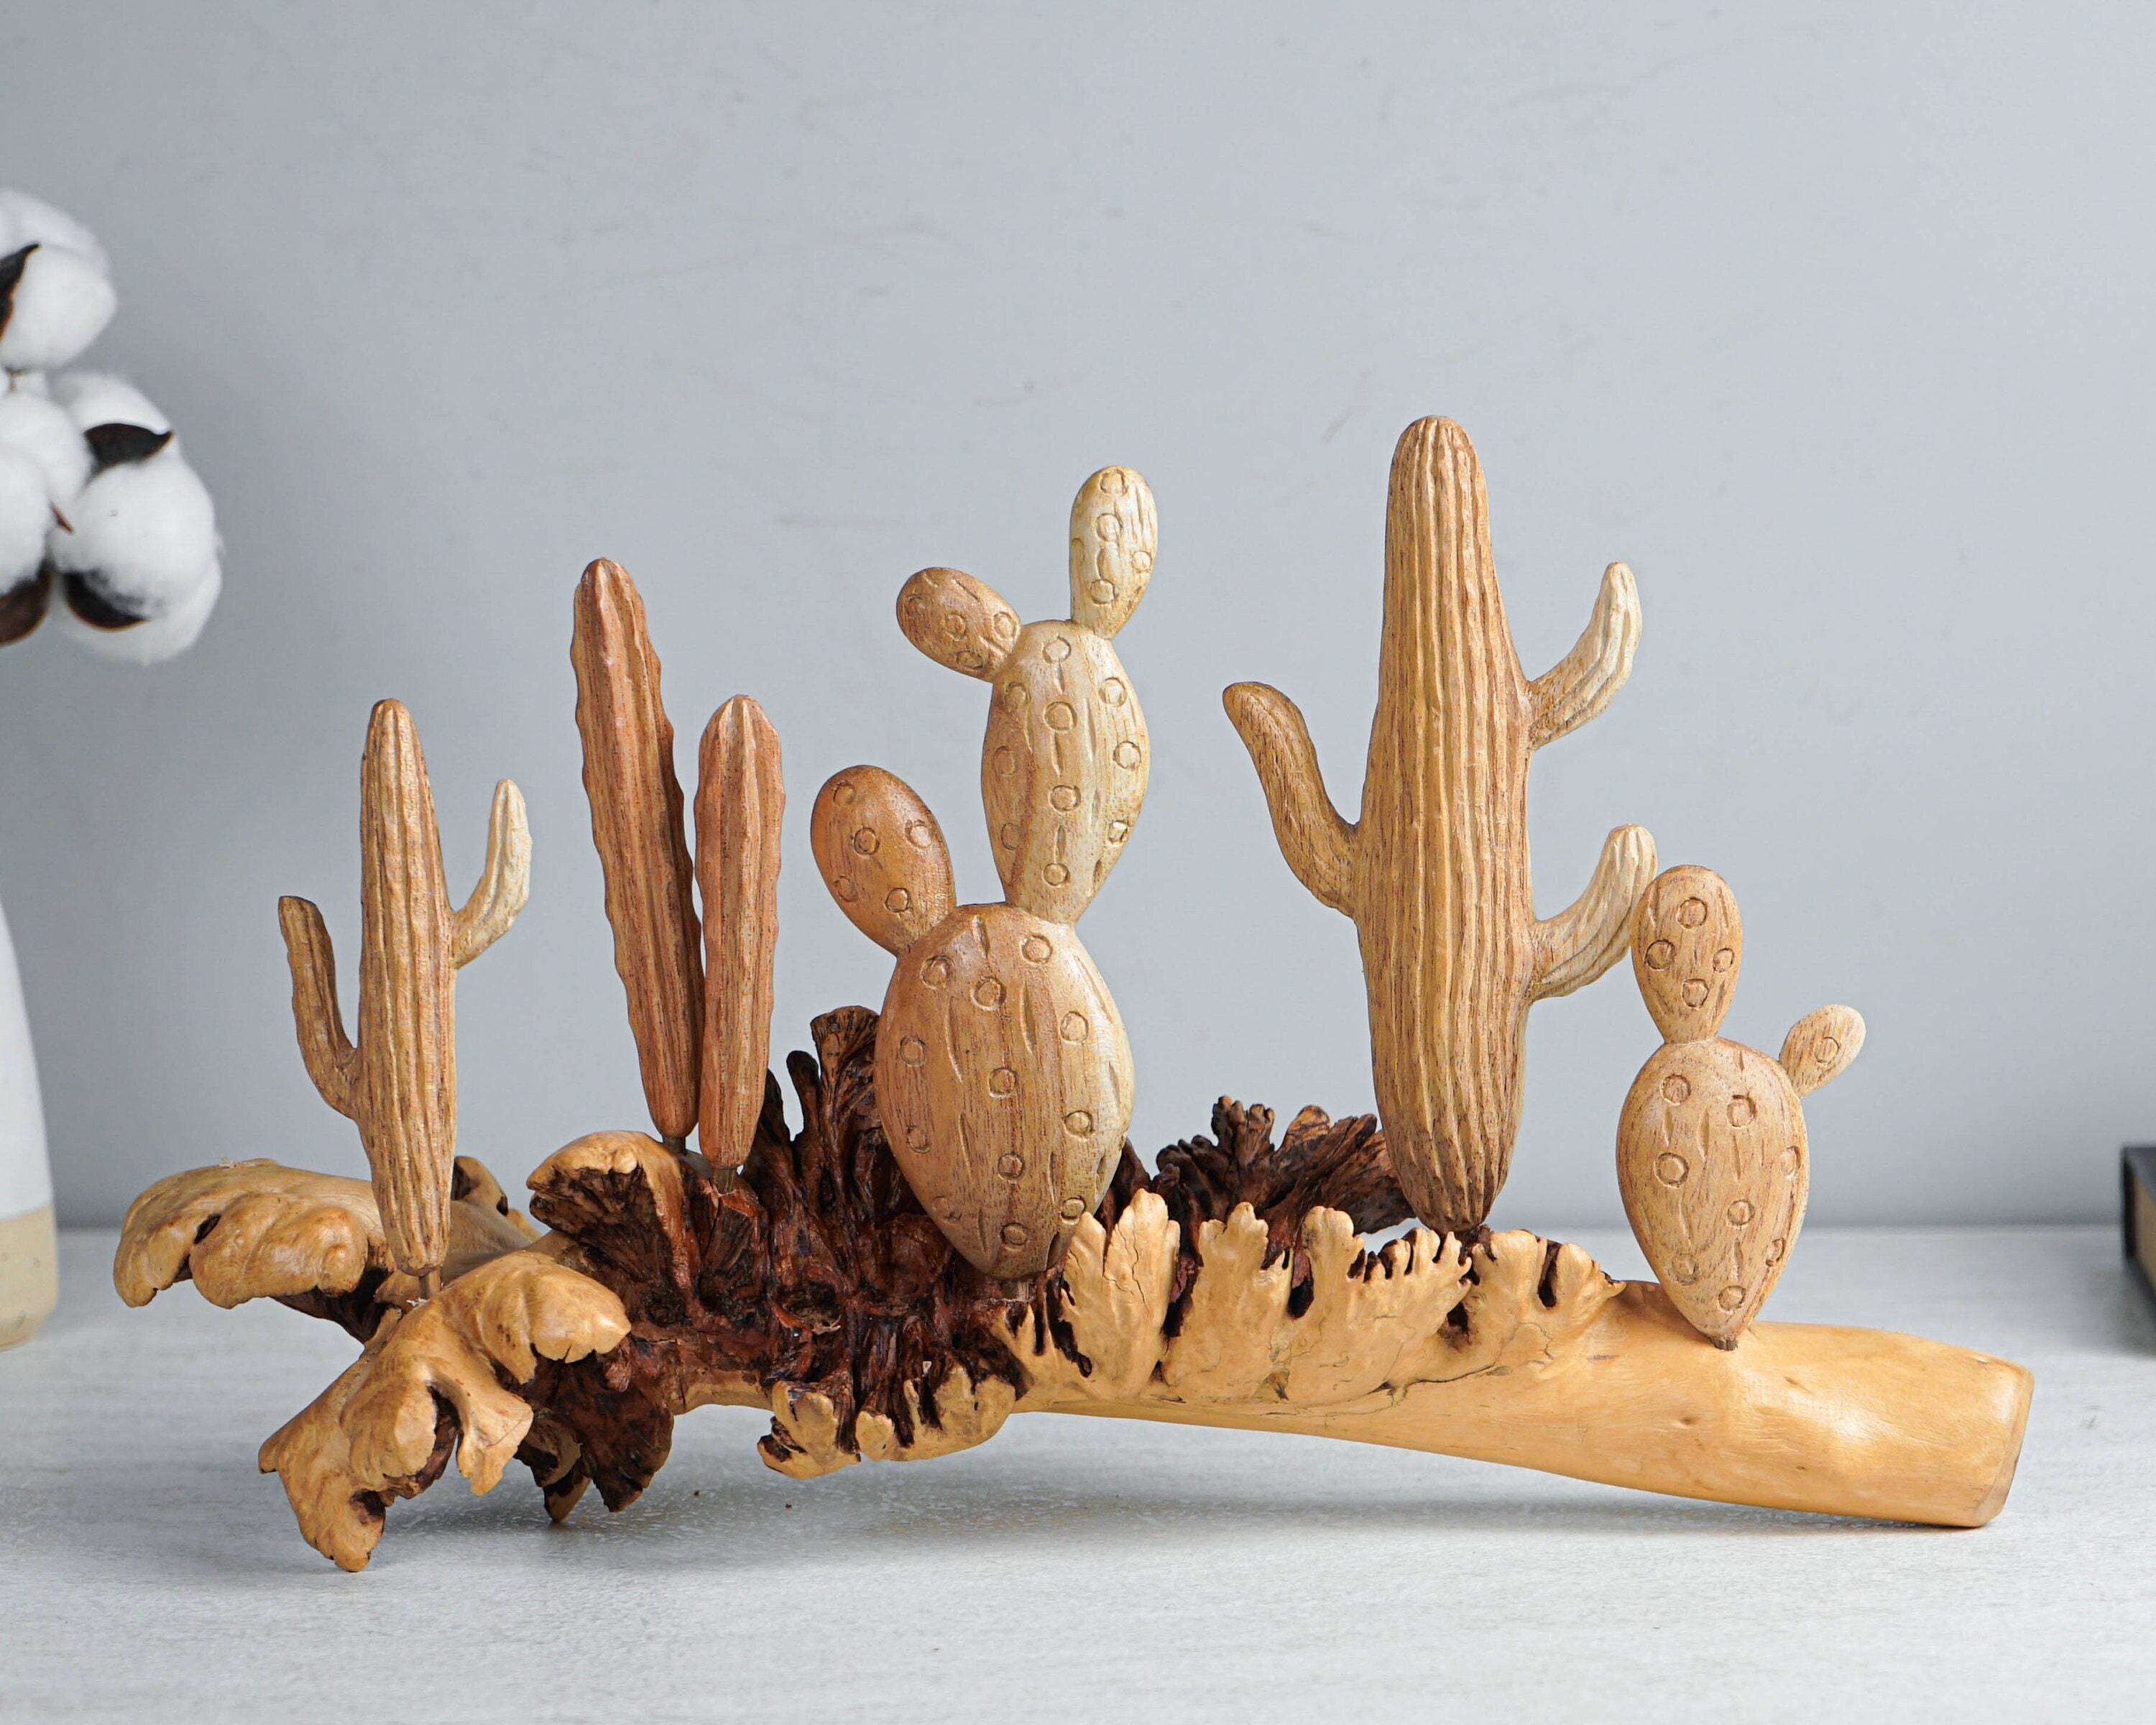 Wooden Cactus Sculpture, 13.5 Length Statue, Succulent Plant